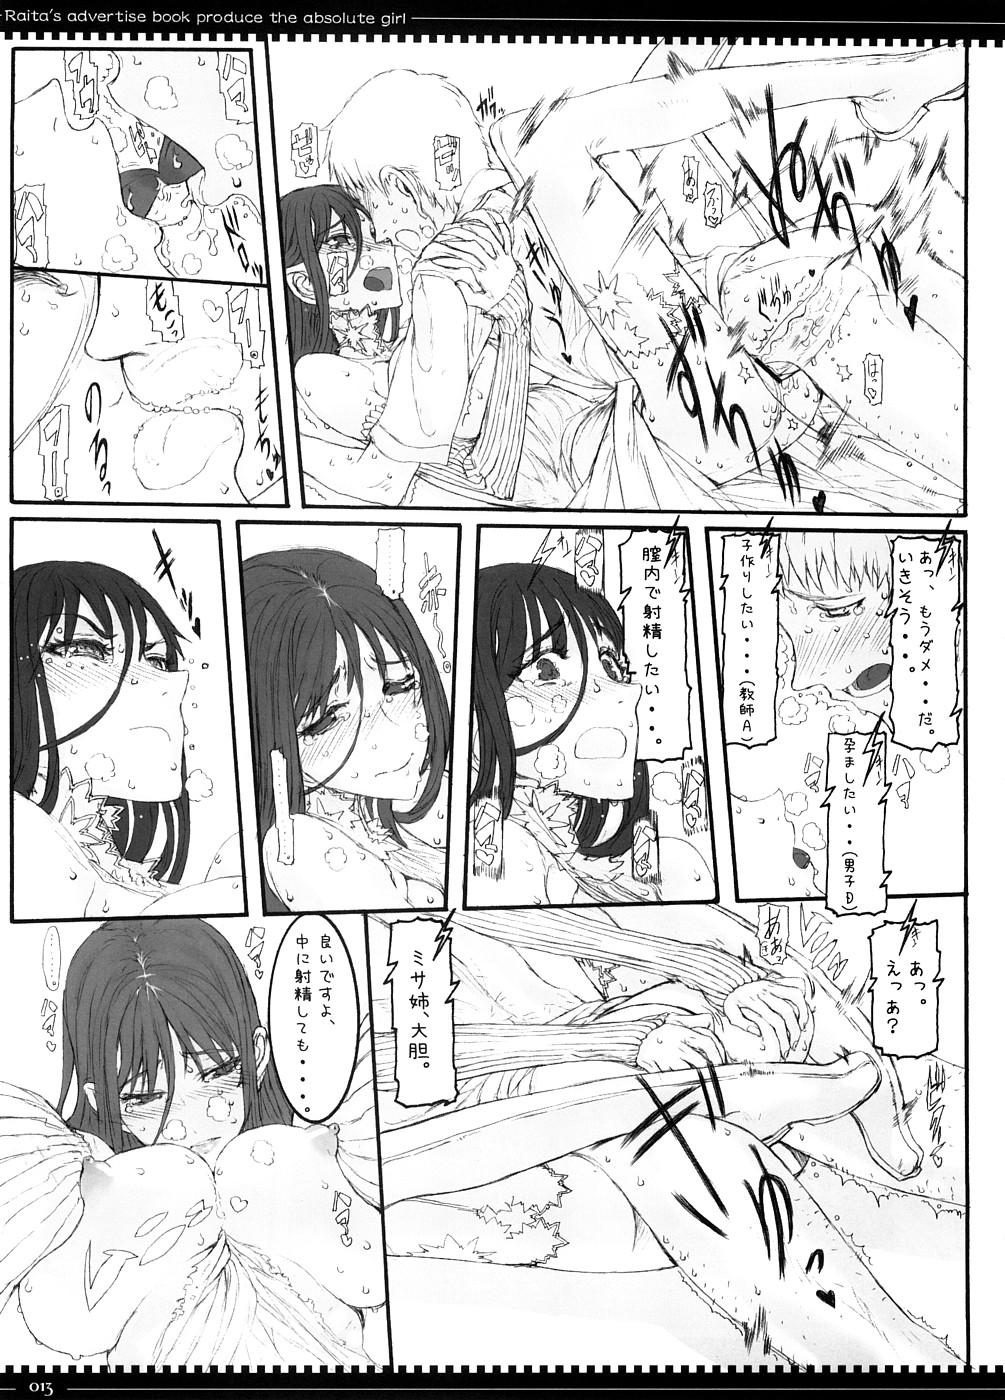 Humiliation Mahou Shoujo 3.0 - Zero no tsukaima Zettai junpaku mahou shoujo Letsdoeit - Page 12